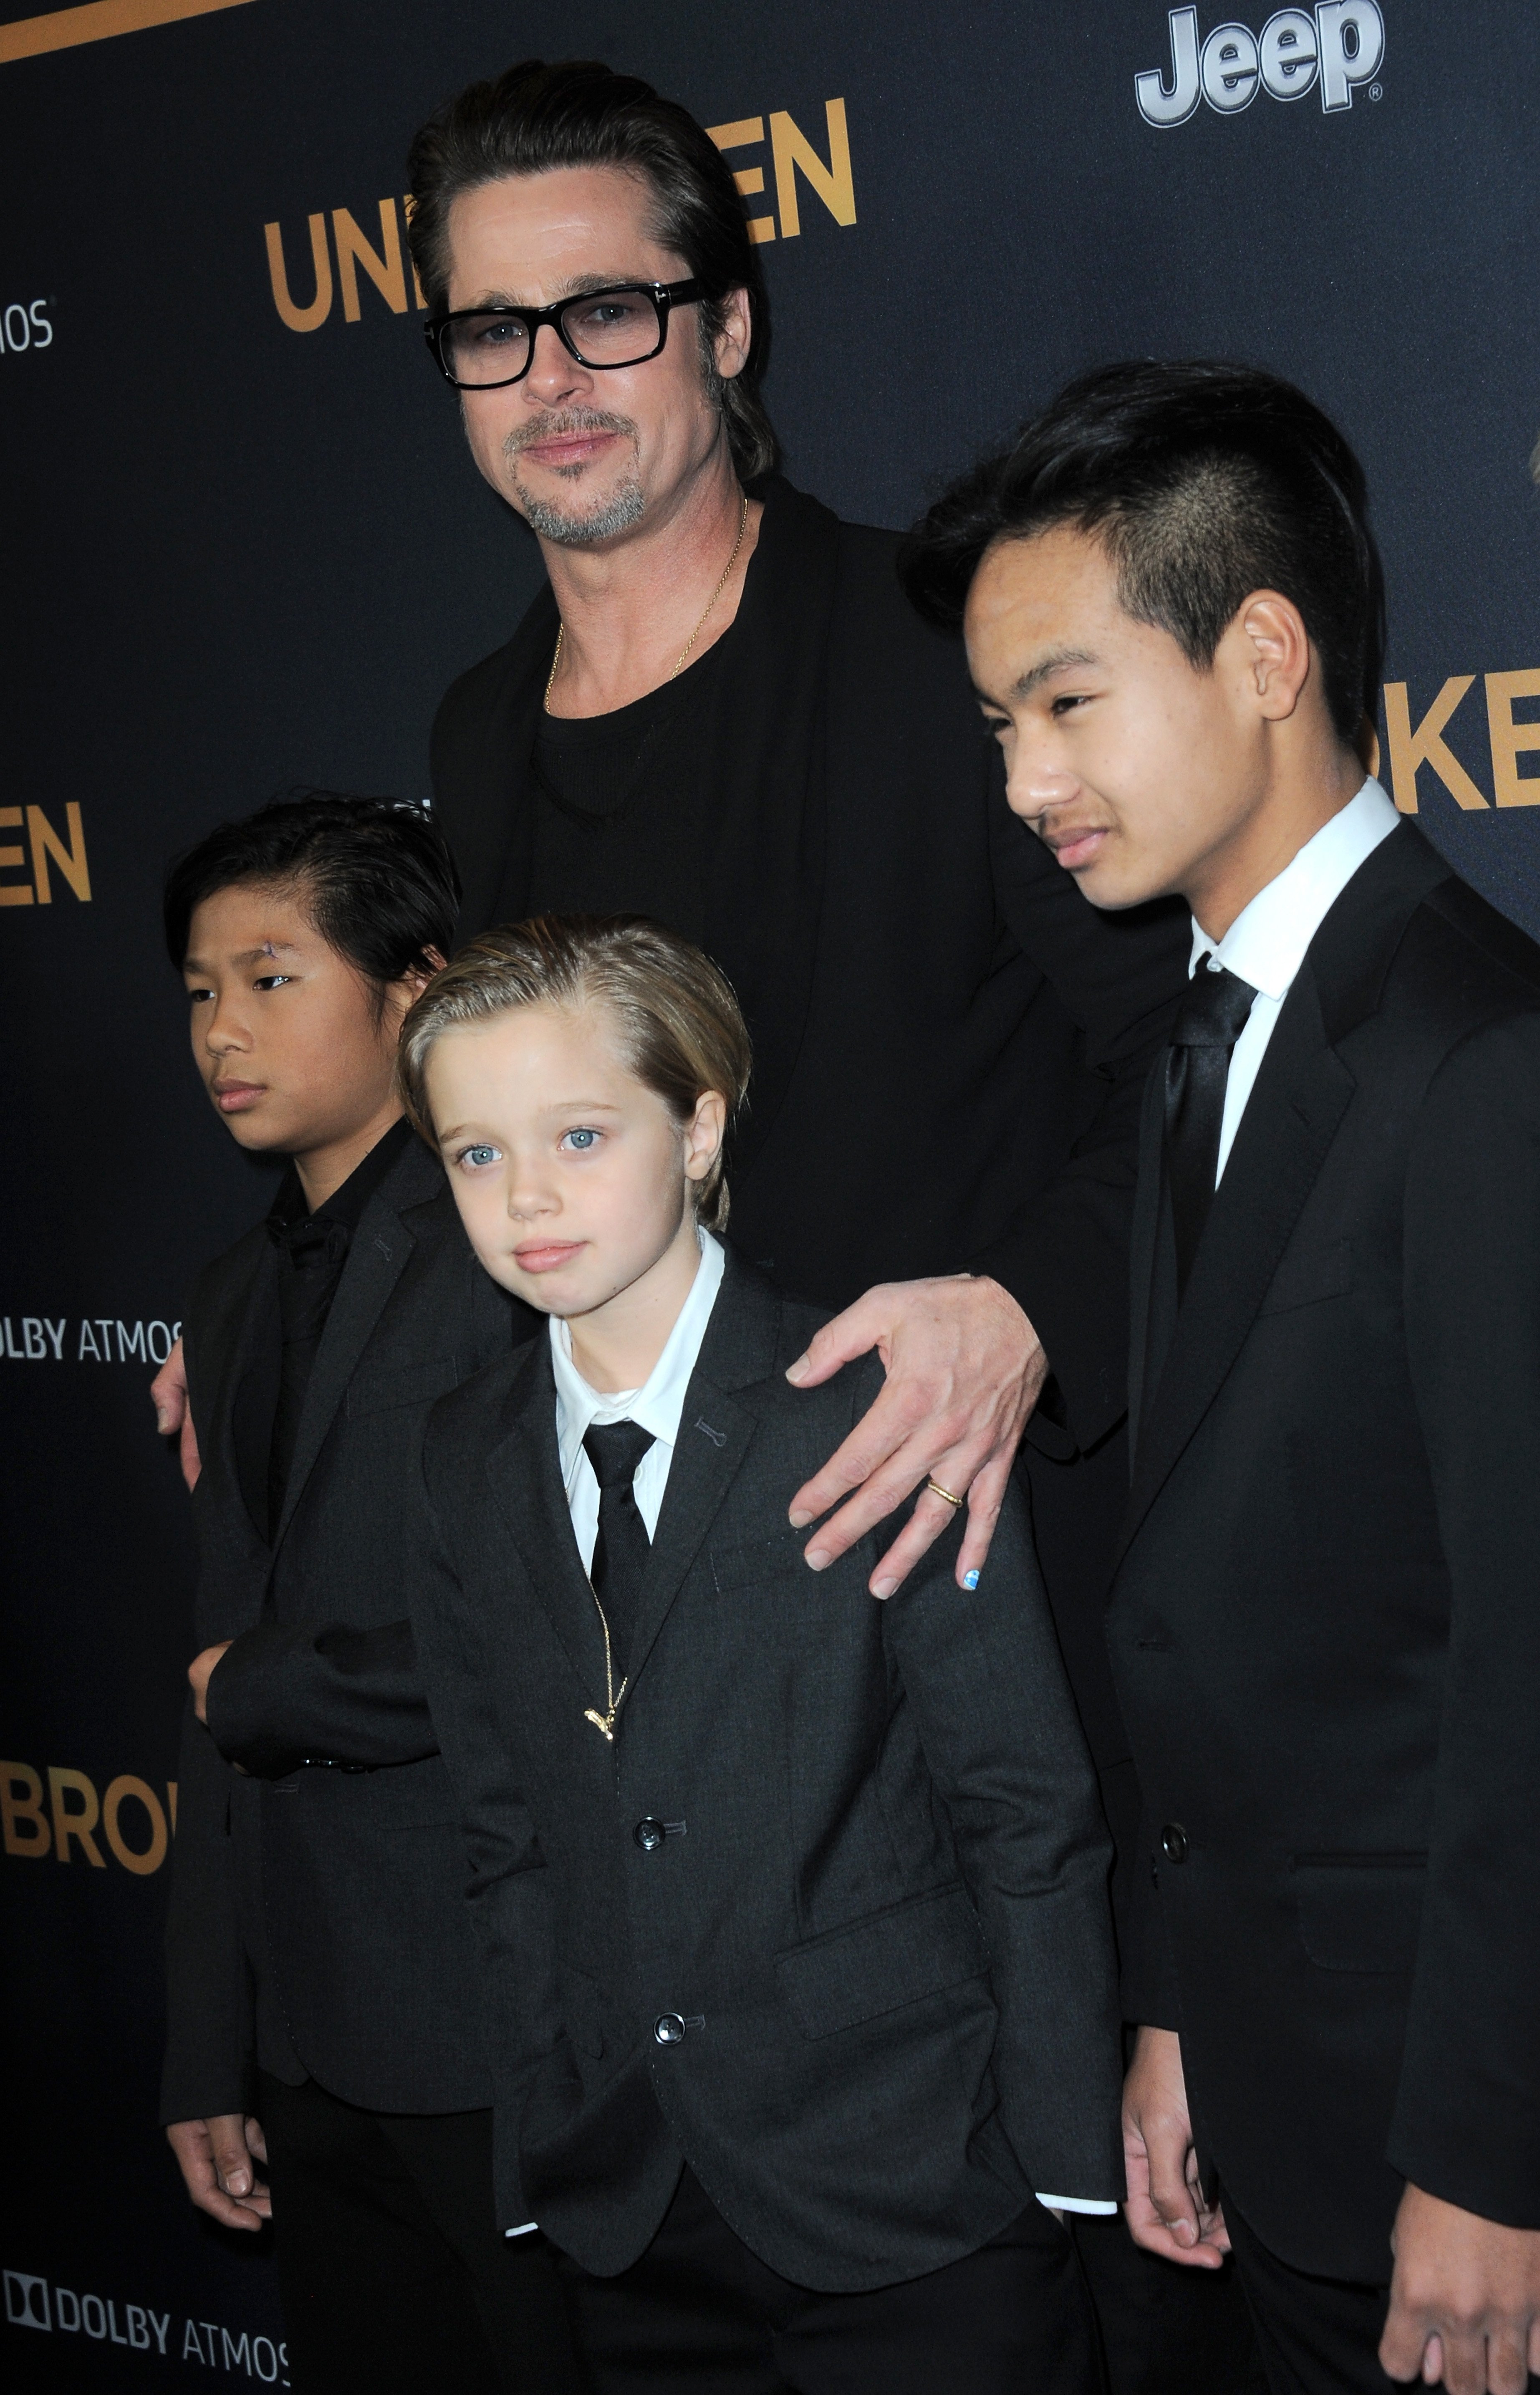 Brad Pitt, Pax, Shiloh und Maddox Jolie-Pitt bei der Premiere von "Unbroken" am 15. Dezember 2014 in Hollywood, Kalifornien | Quelle: Getty Images